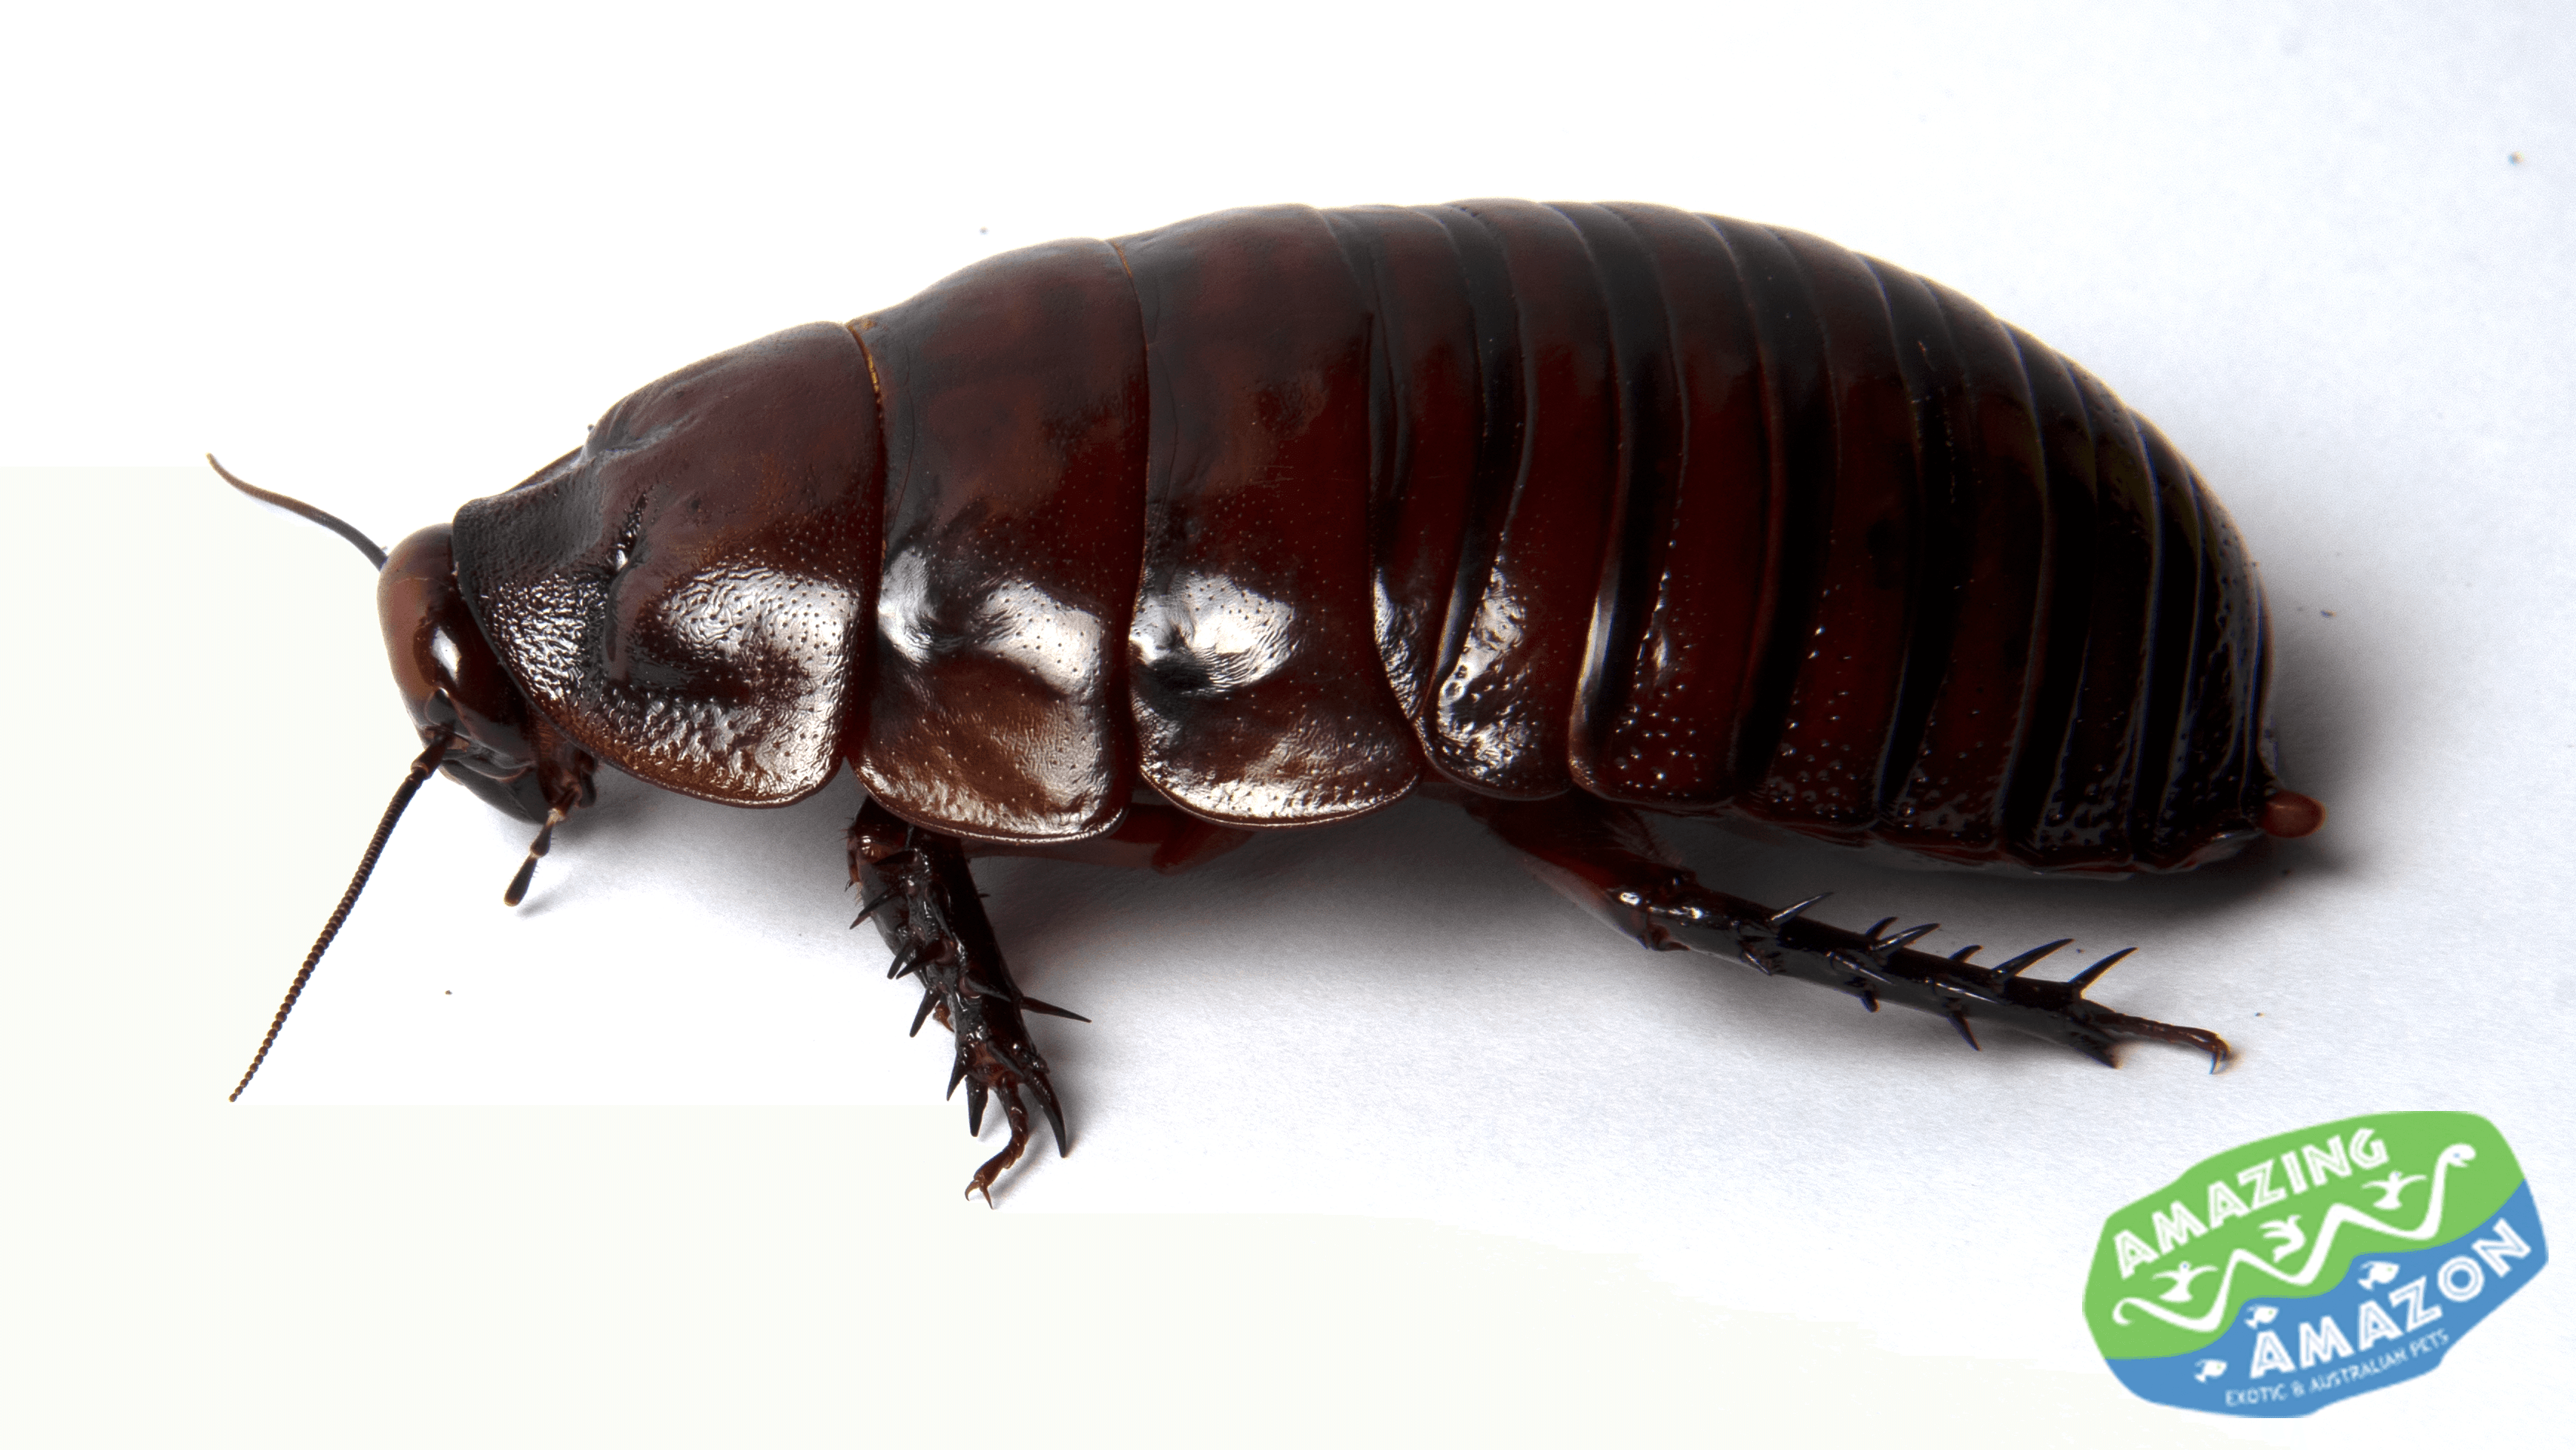 Giant Burrowing Cockroach - Amazing Amazon